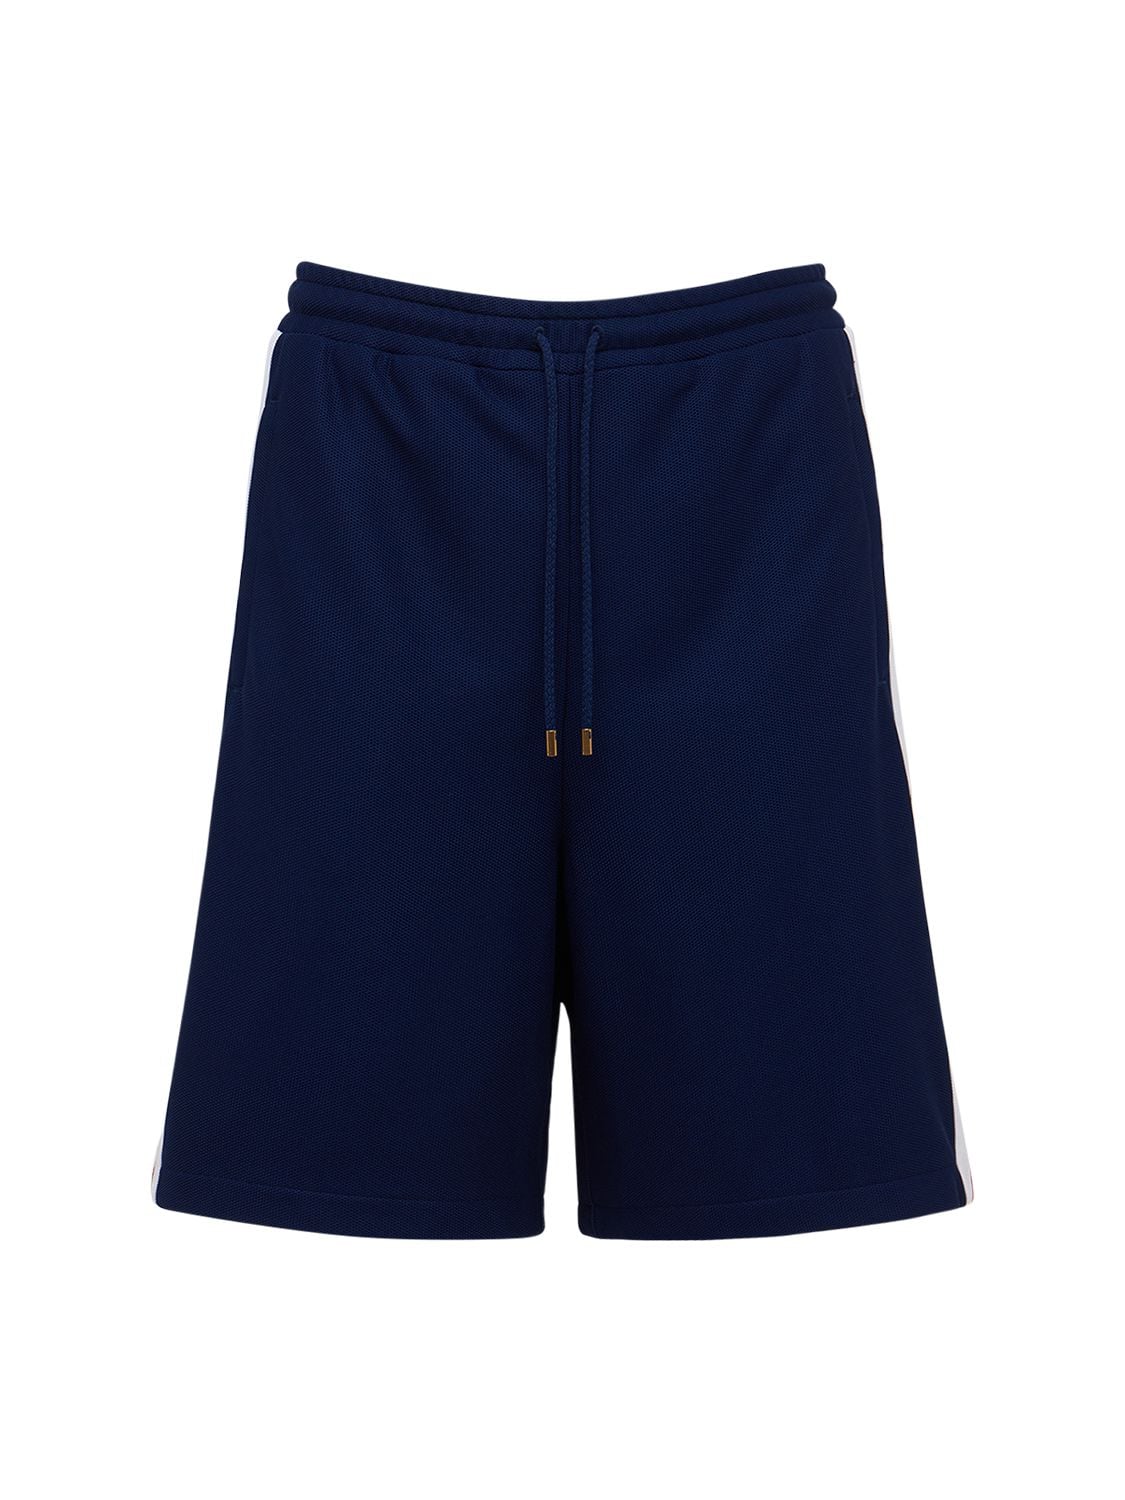 Gucci Interlocking G Piquet Shorts In Blue | ModeSens